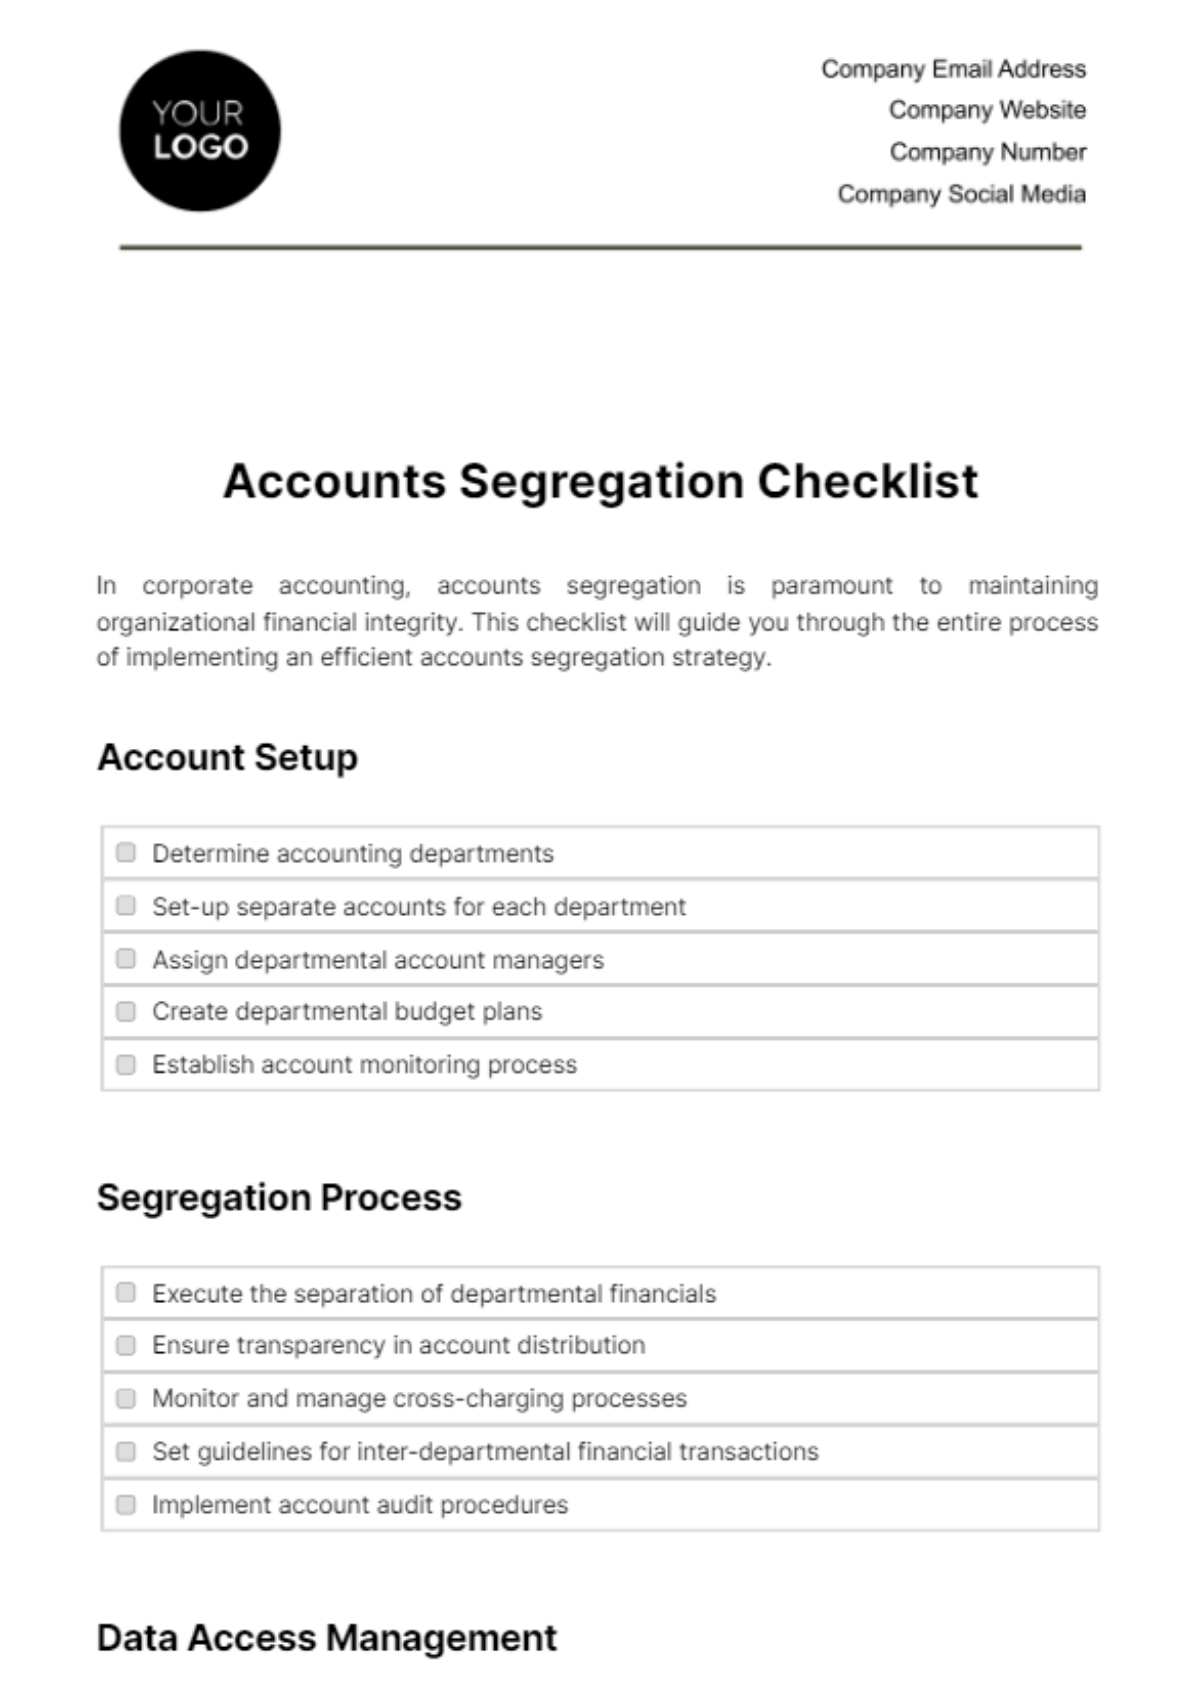 Accounts Segregation Checklist Template